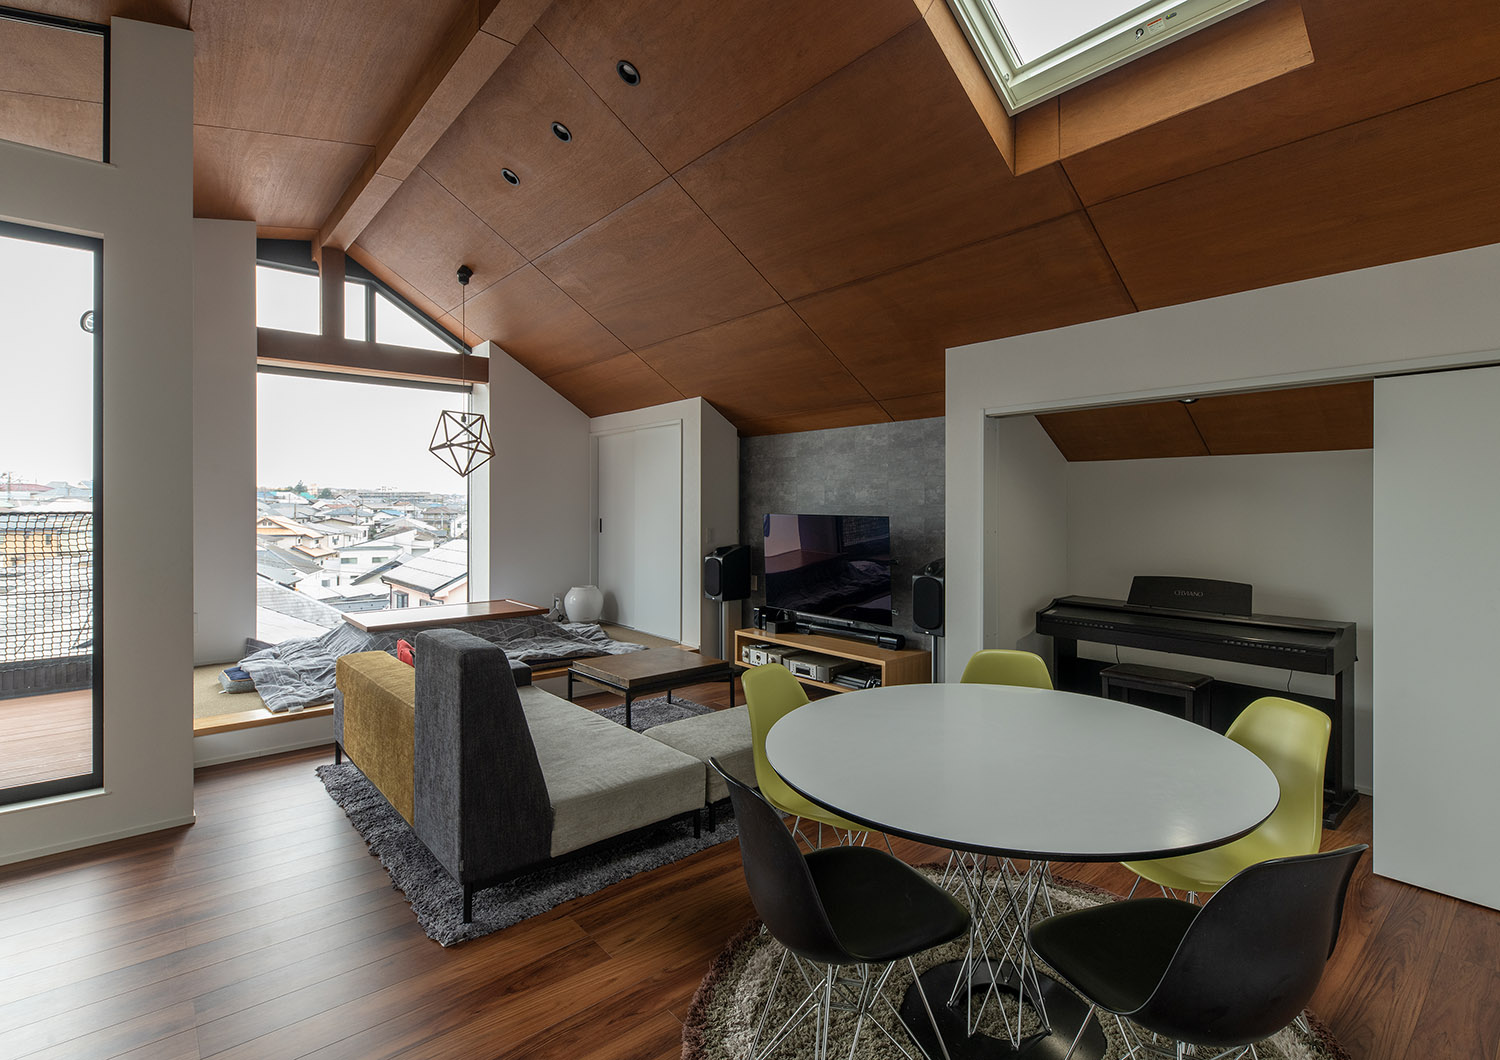 丸いテーブルやピアノが置かれた木の高天井のLDK・デザイン住宅